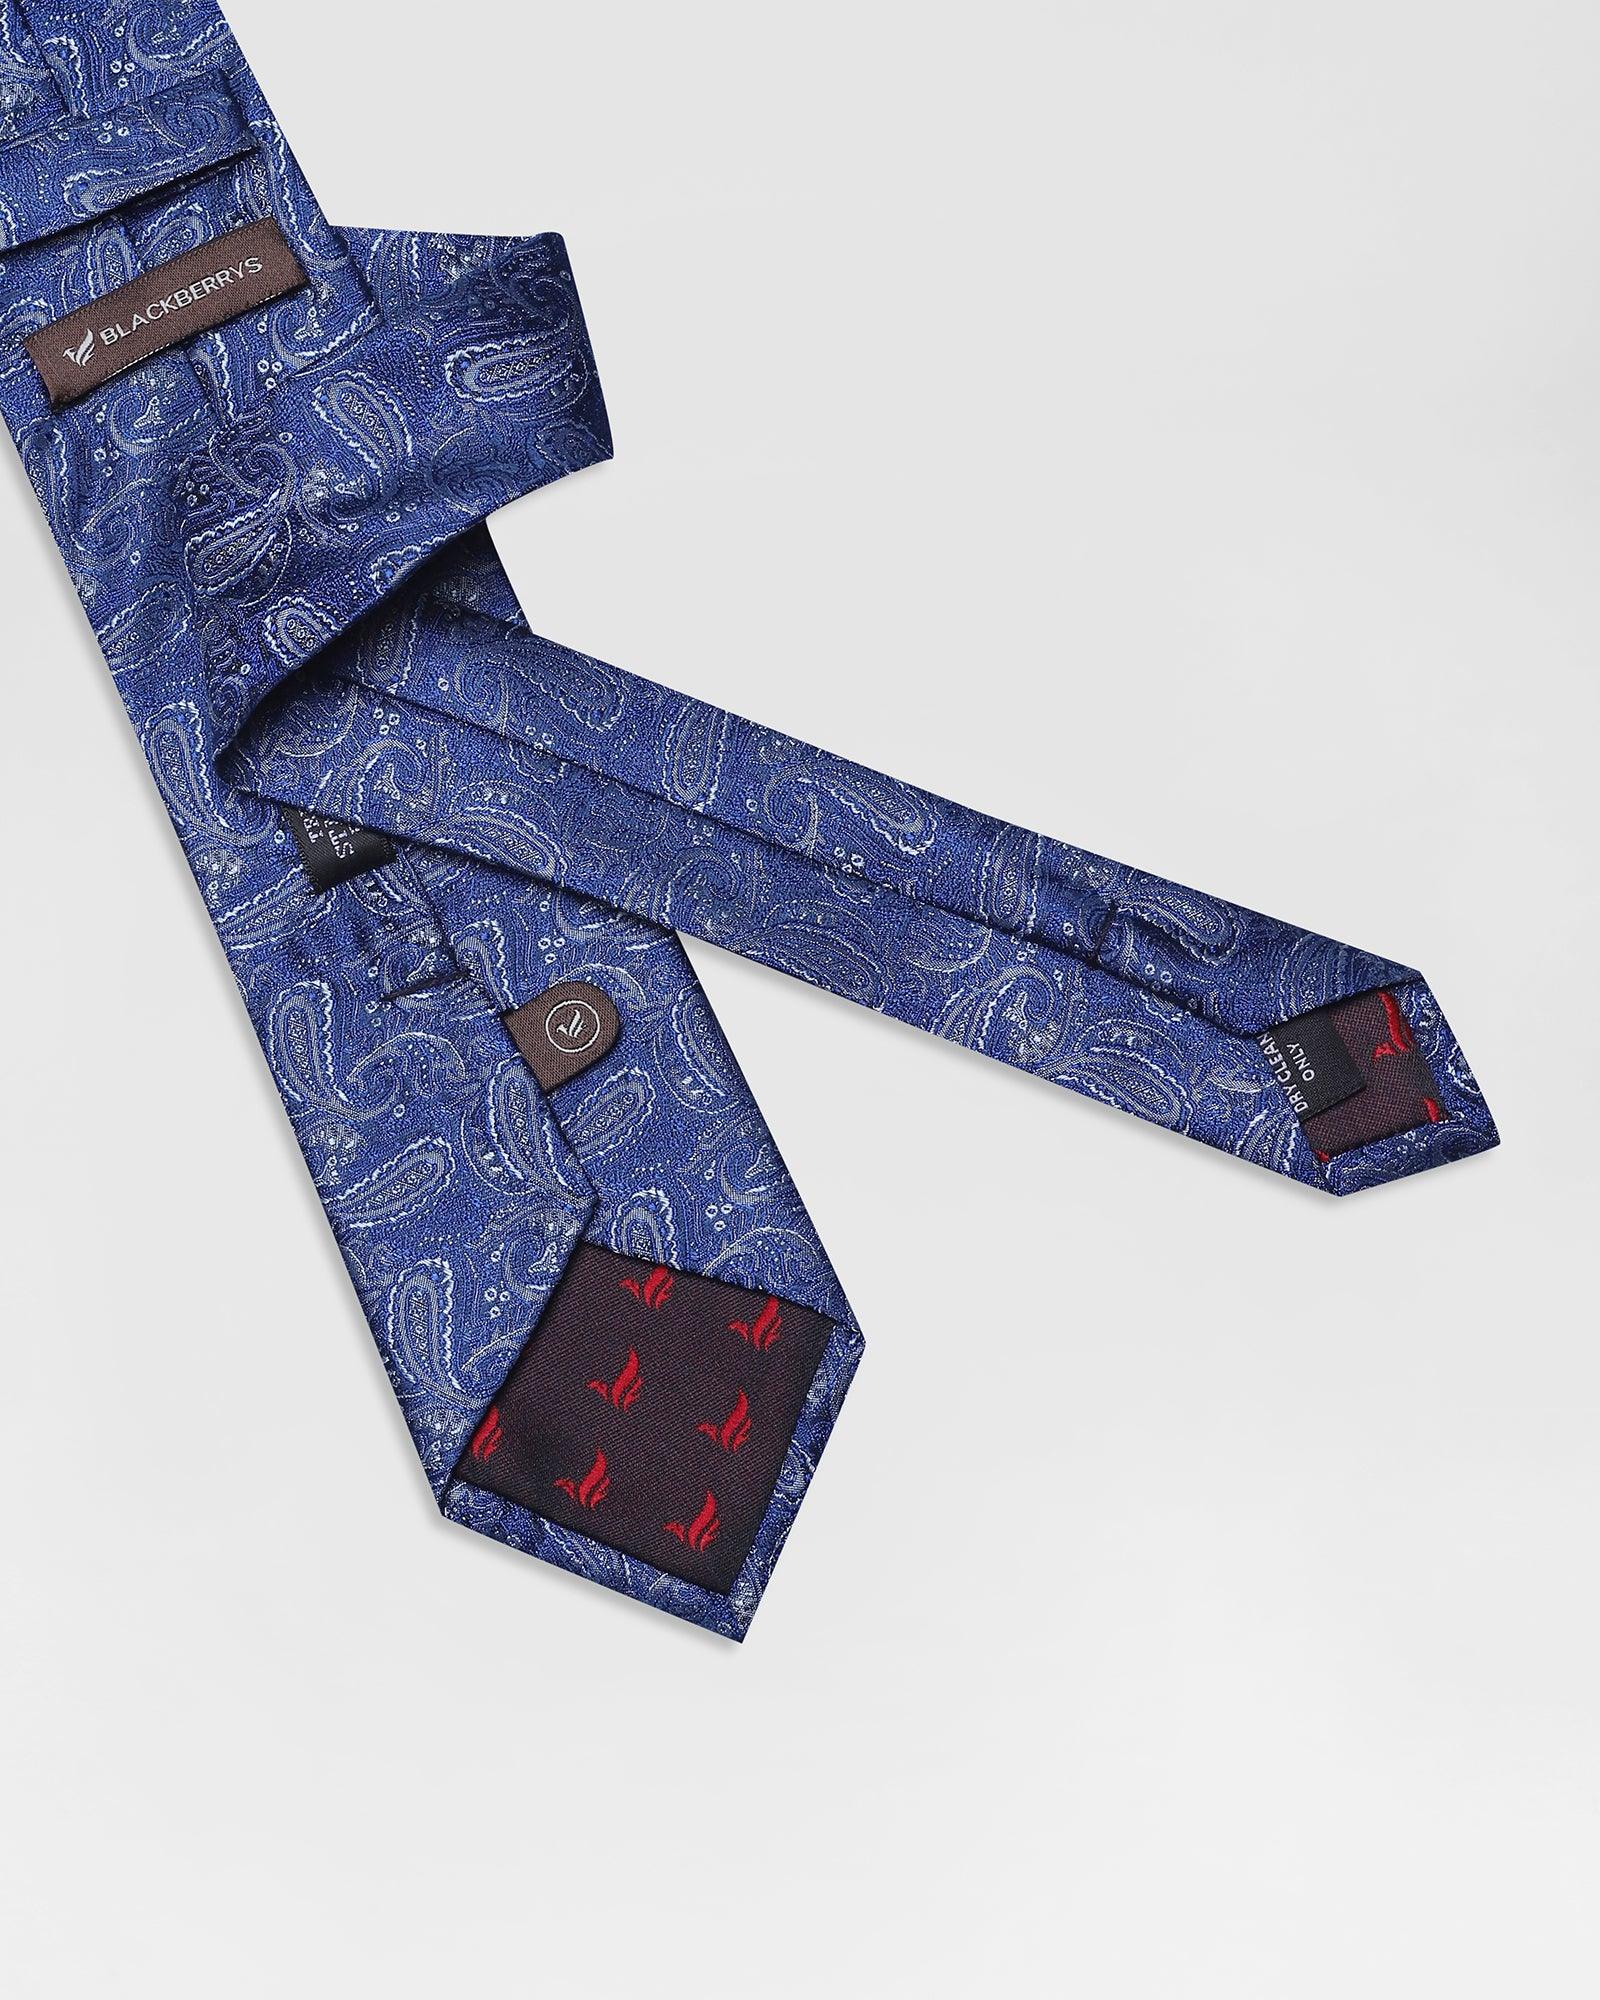 Silk Blue Printed Tie - Ruben